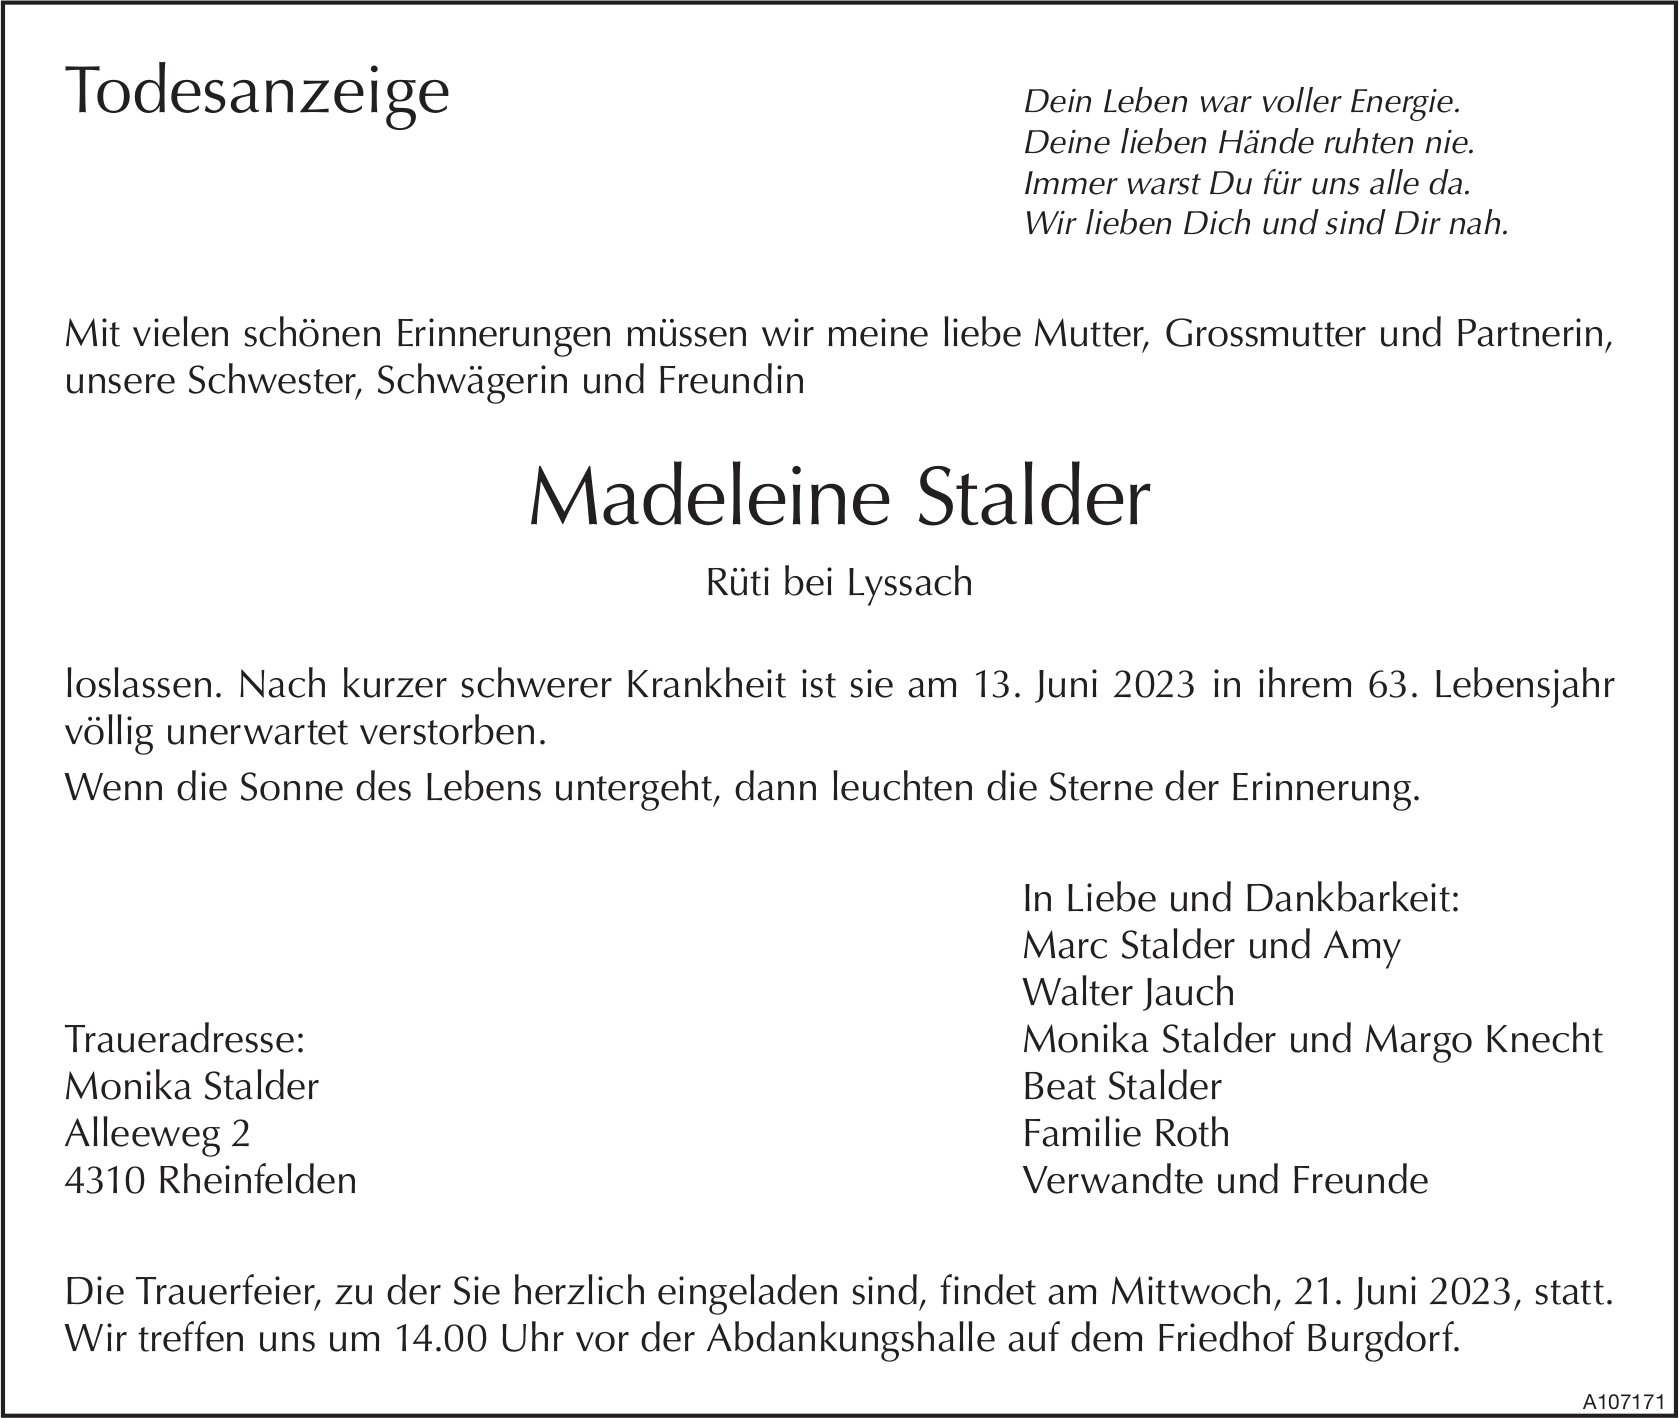 Madeleine Stalder, Juni 2023 / TA